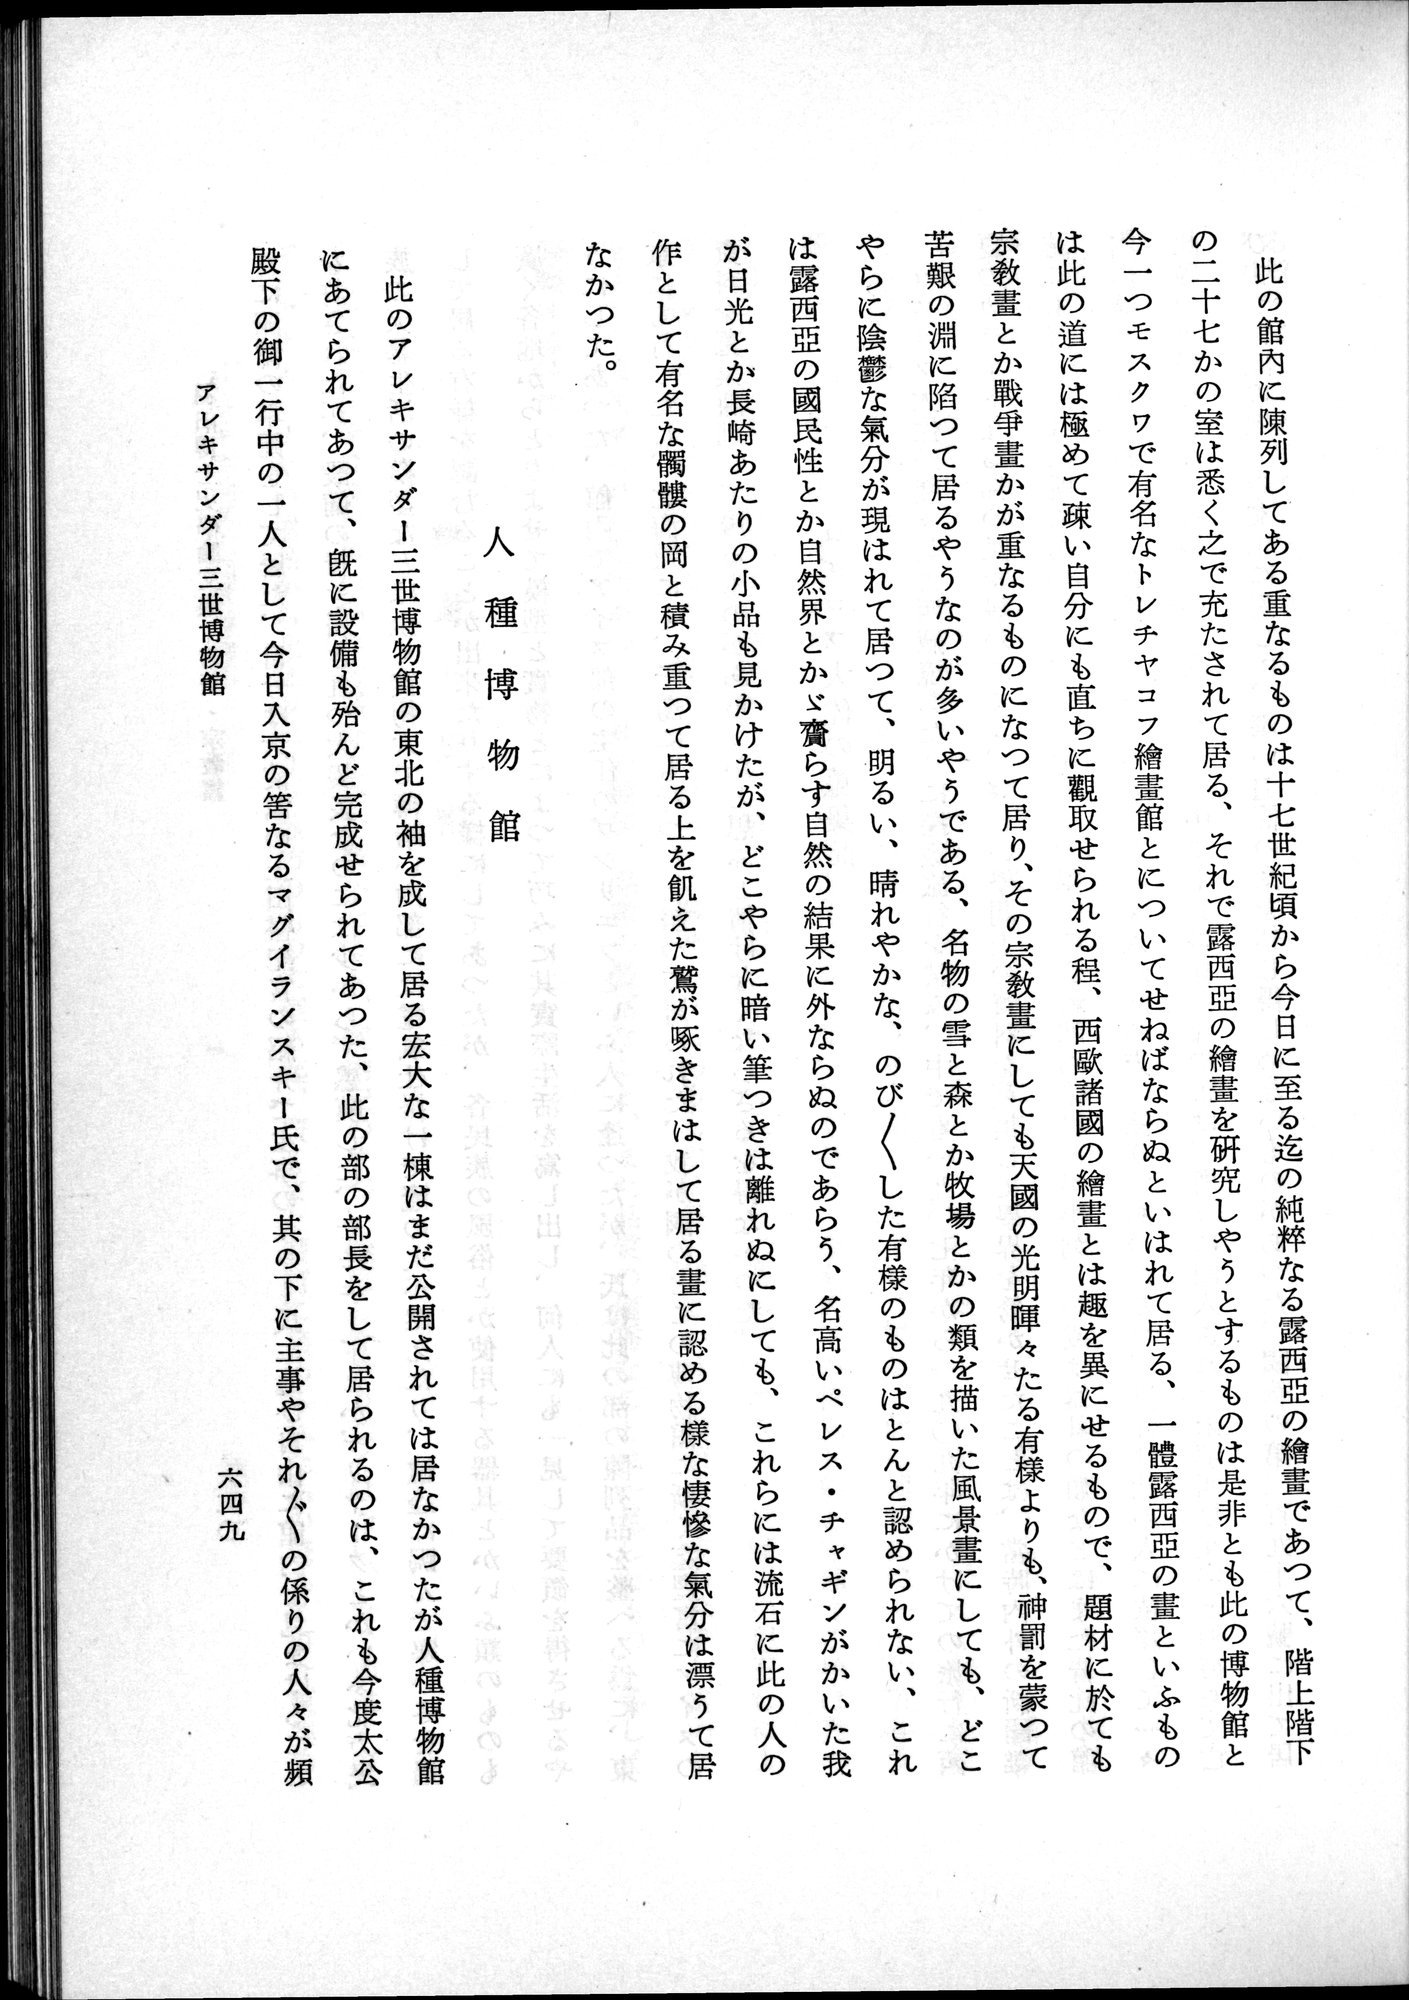 羽田博士史学論文集 : vol.2 / Page 713 (Grayscale High Resolution Image)